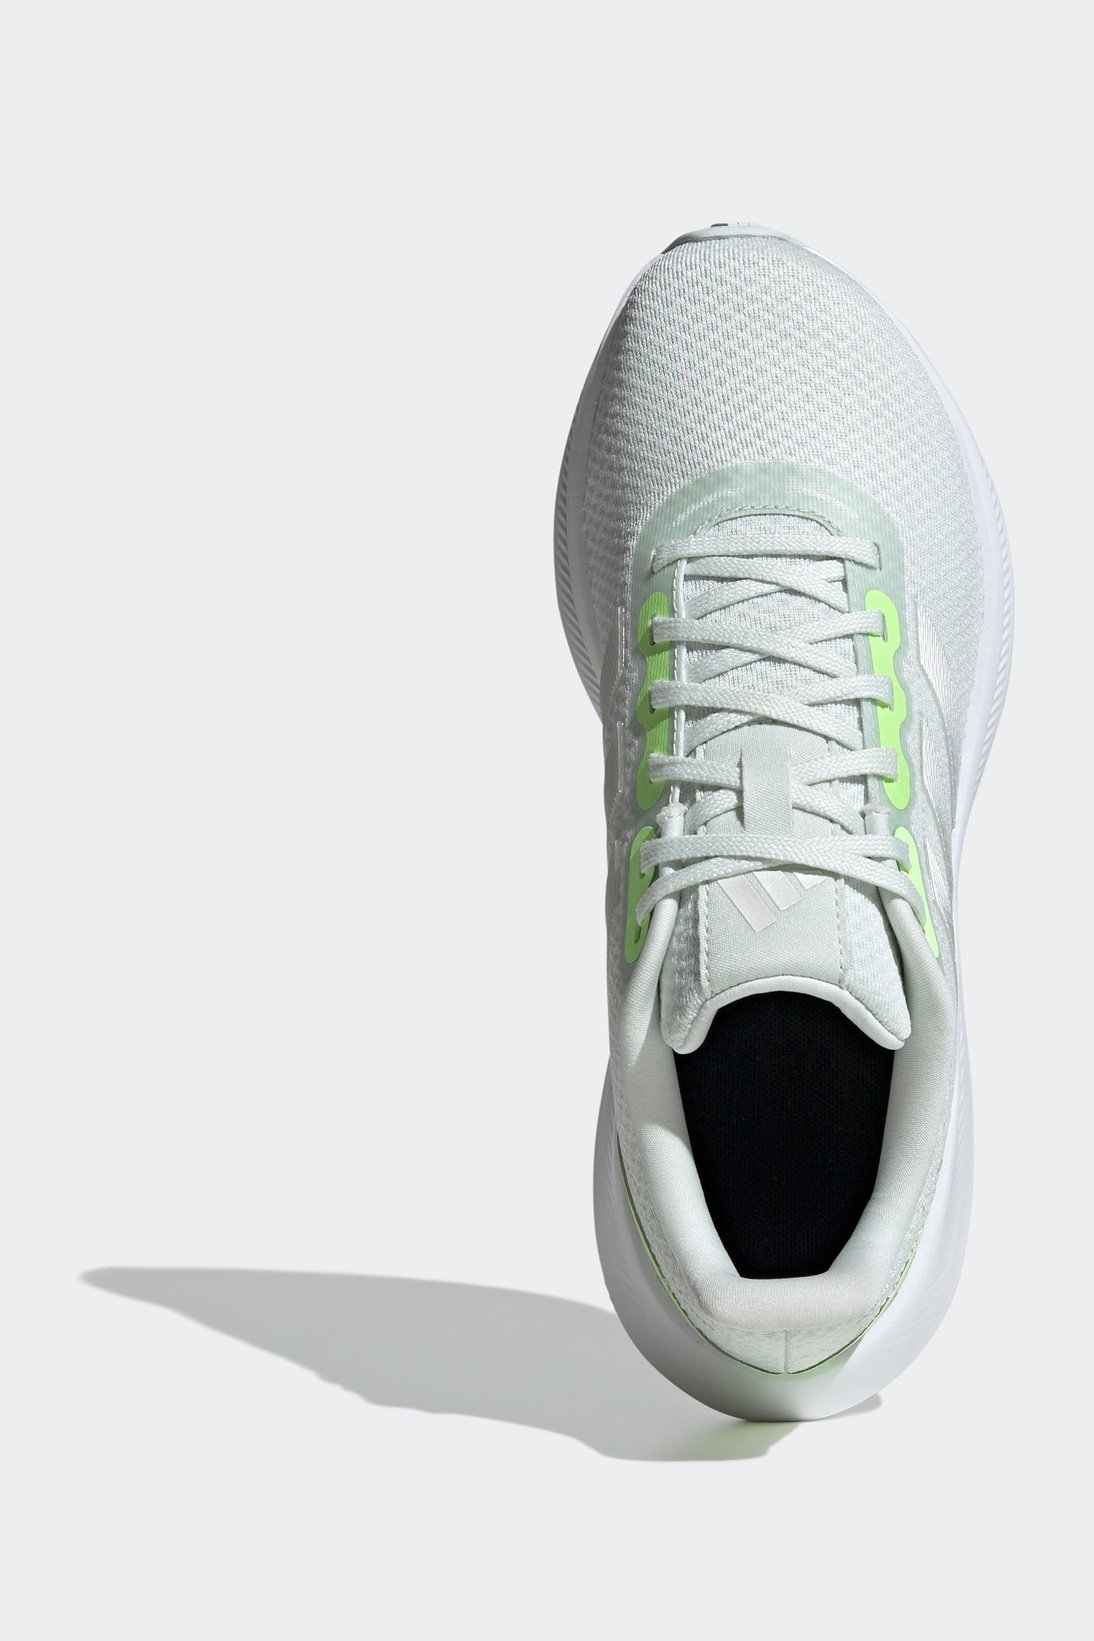 נעלי ספורט לנשים RUNFALCON 3.0 בצבע אפור וירוק